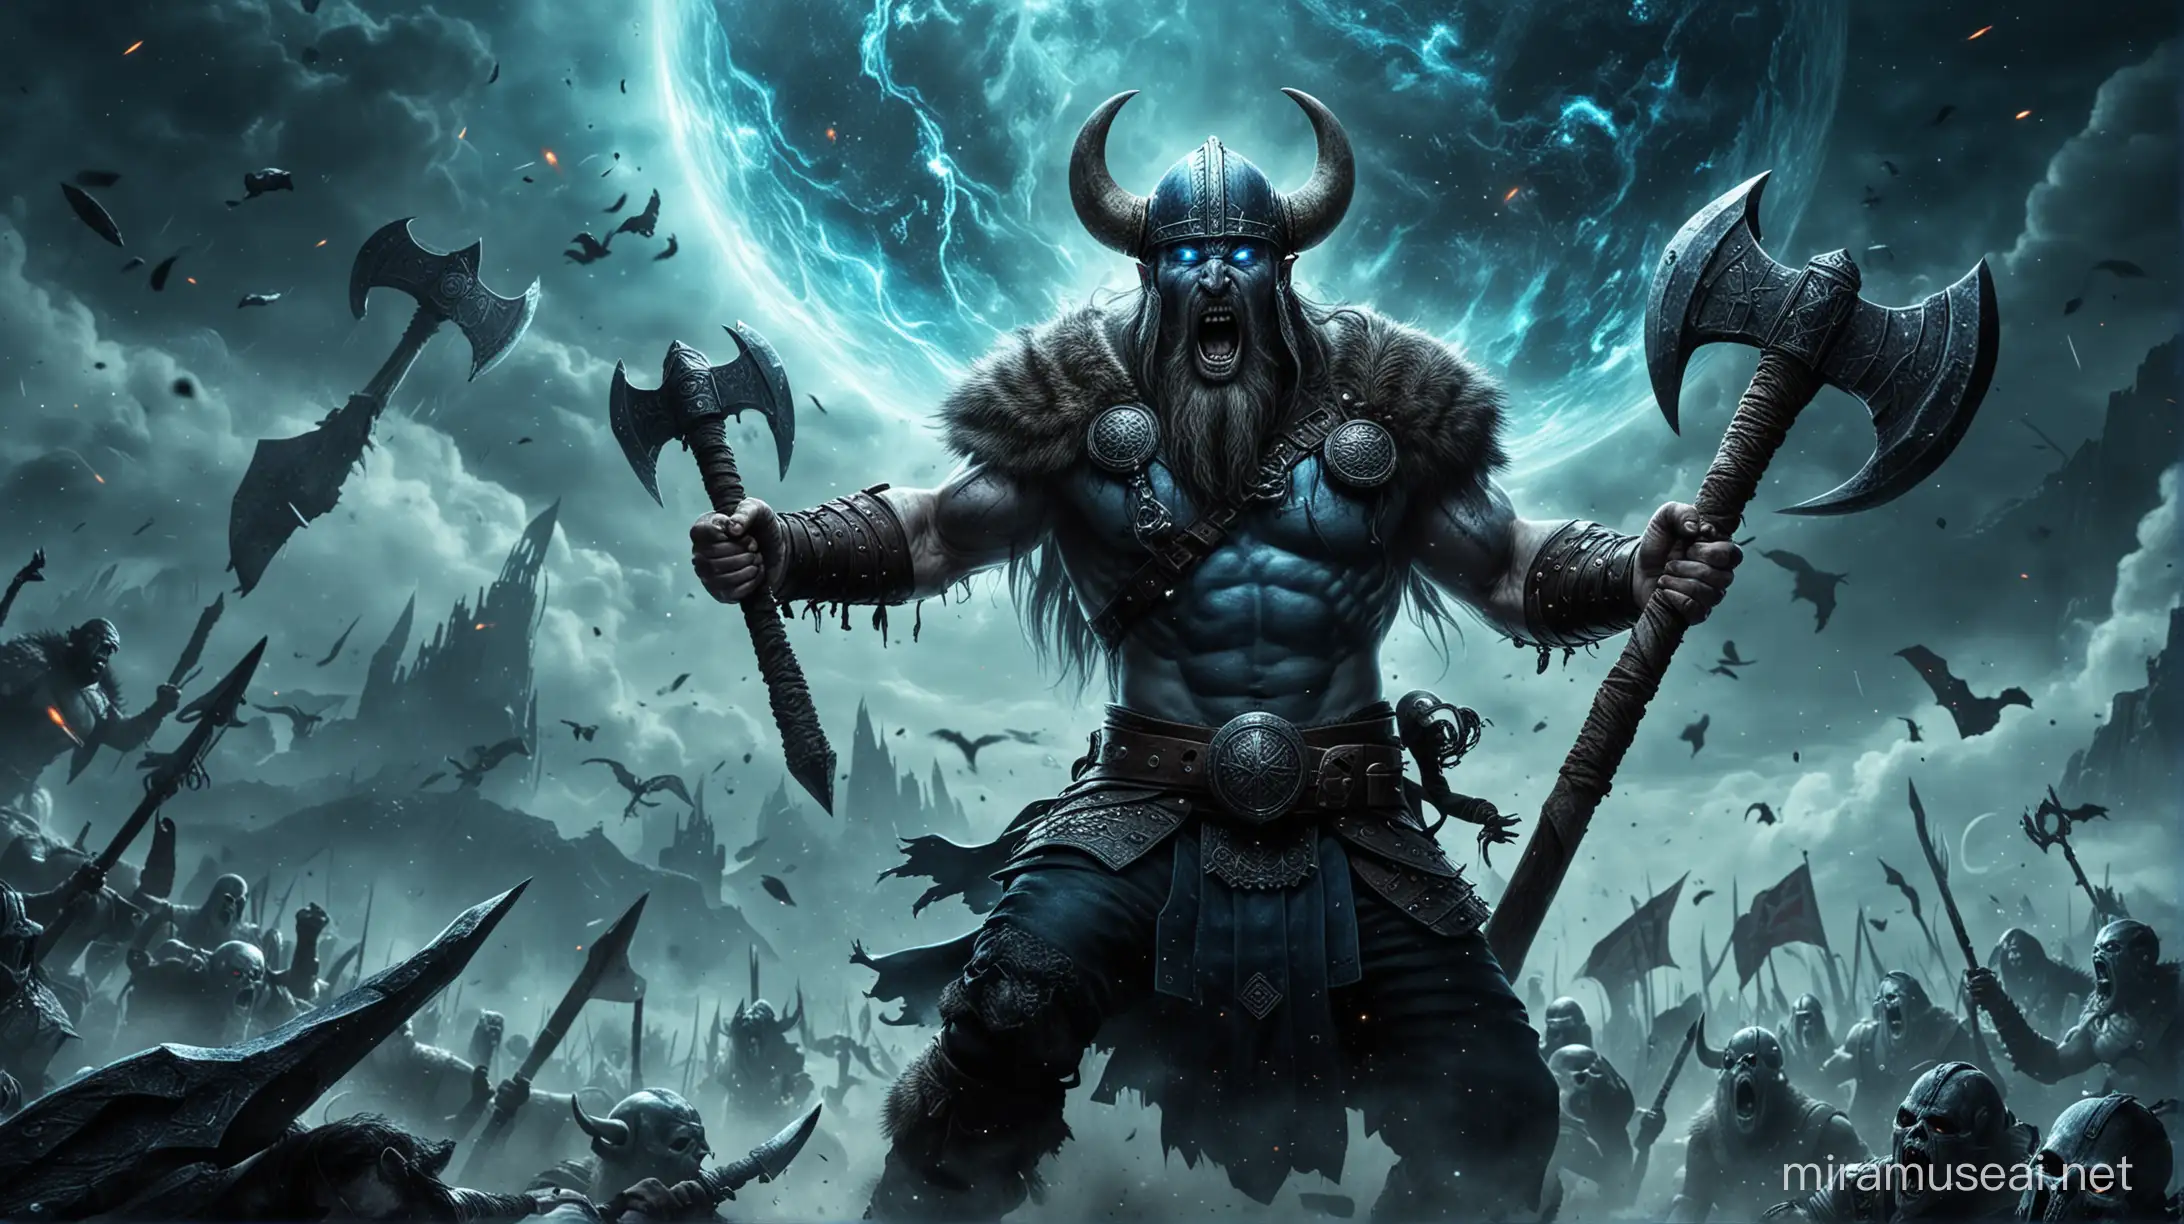 Viking Warrior Duel with Malevolent Deity on Alien Planet